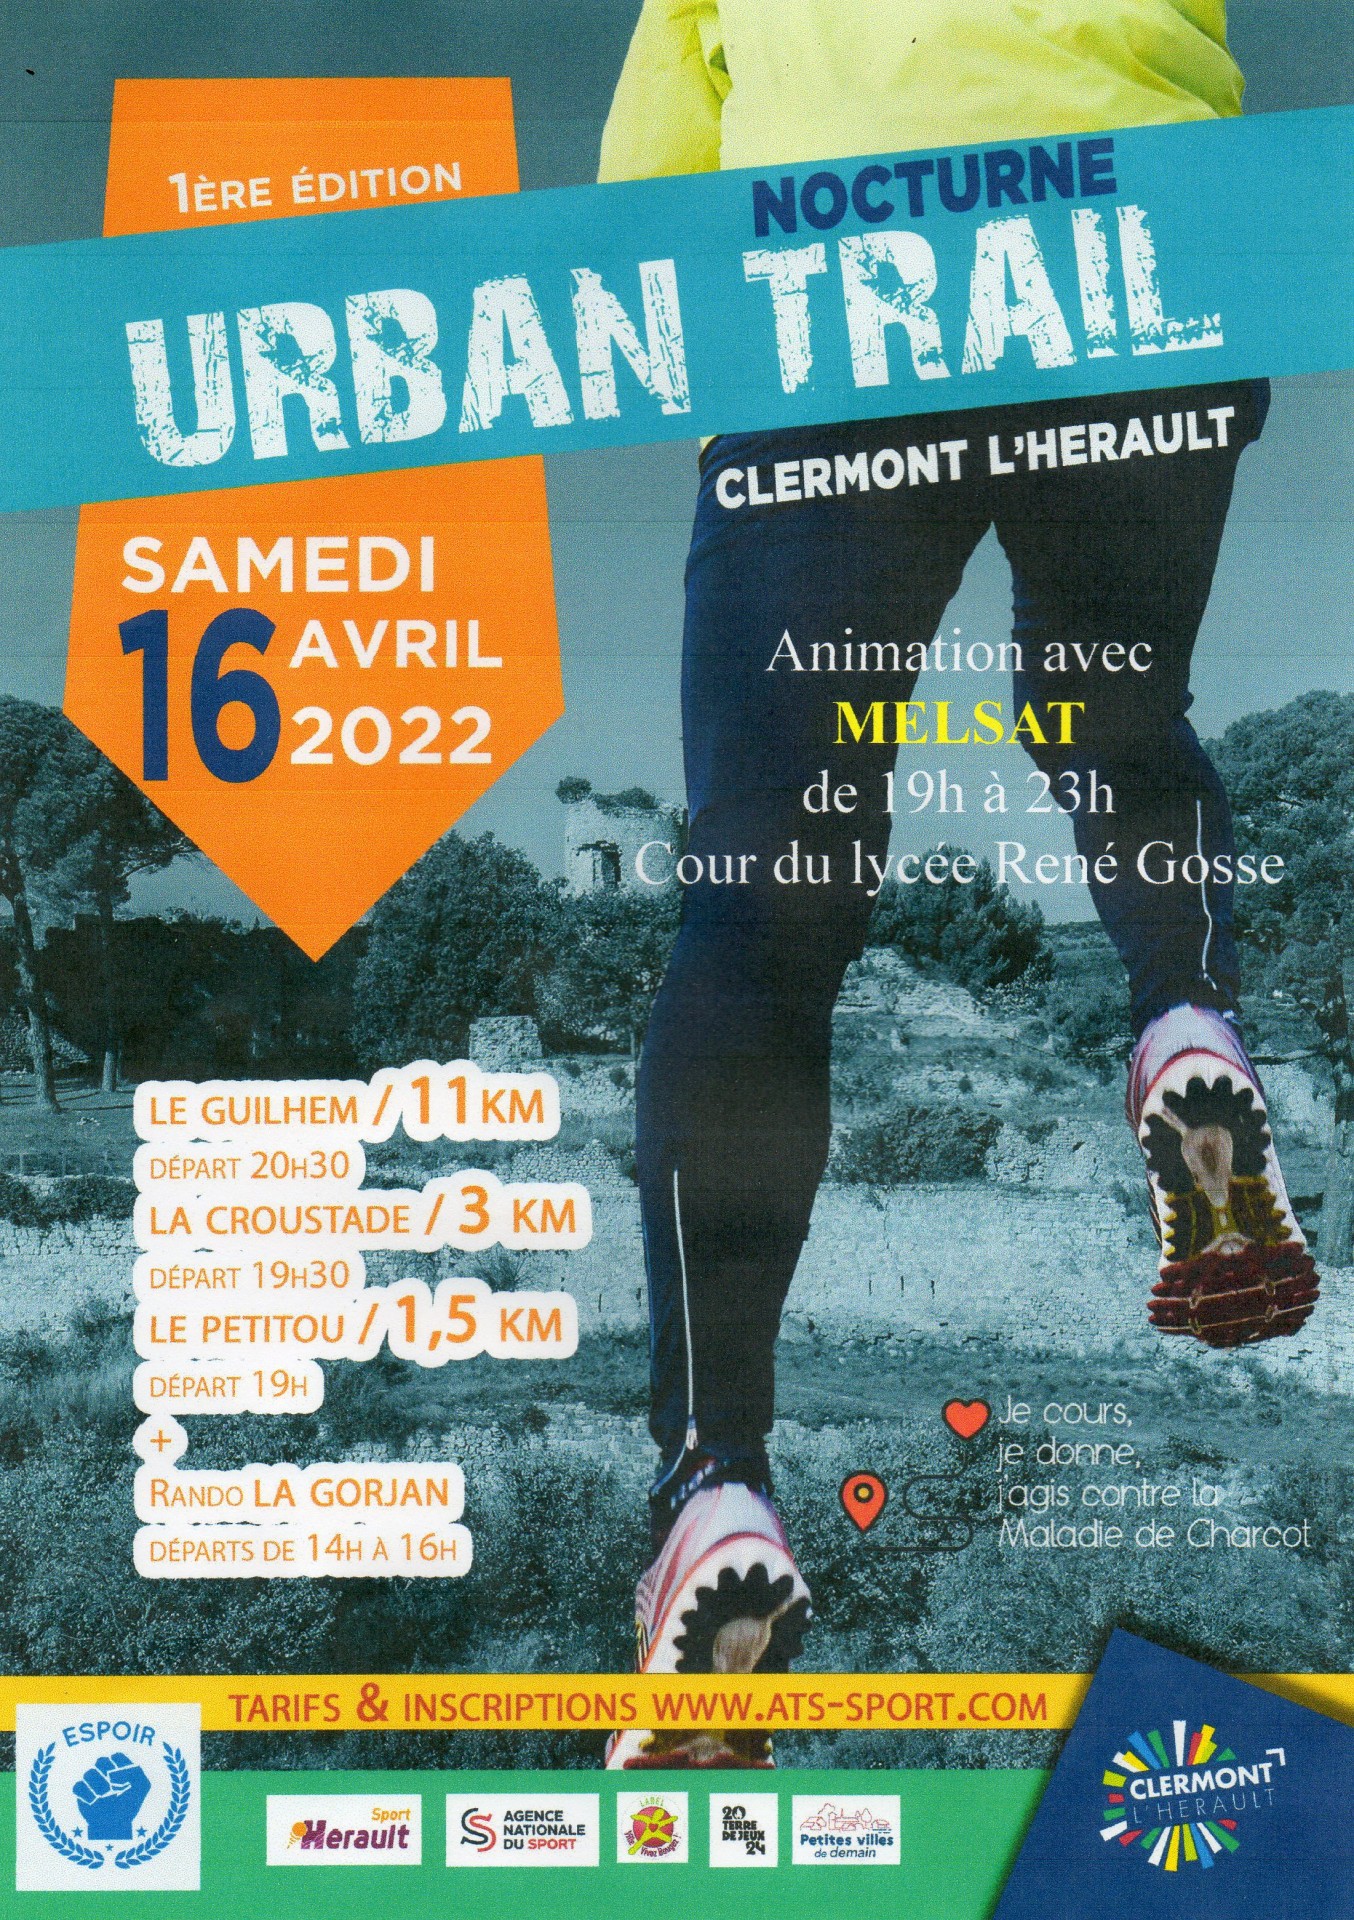 1. Urban trail à Clermont l' Hérault 16 avril 2022